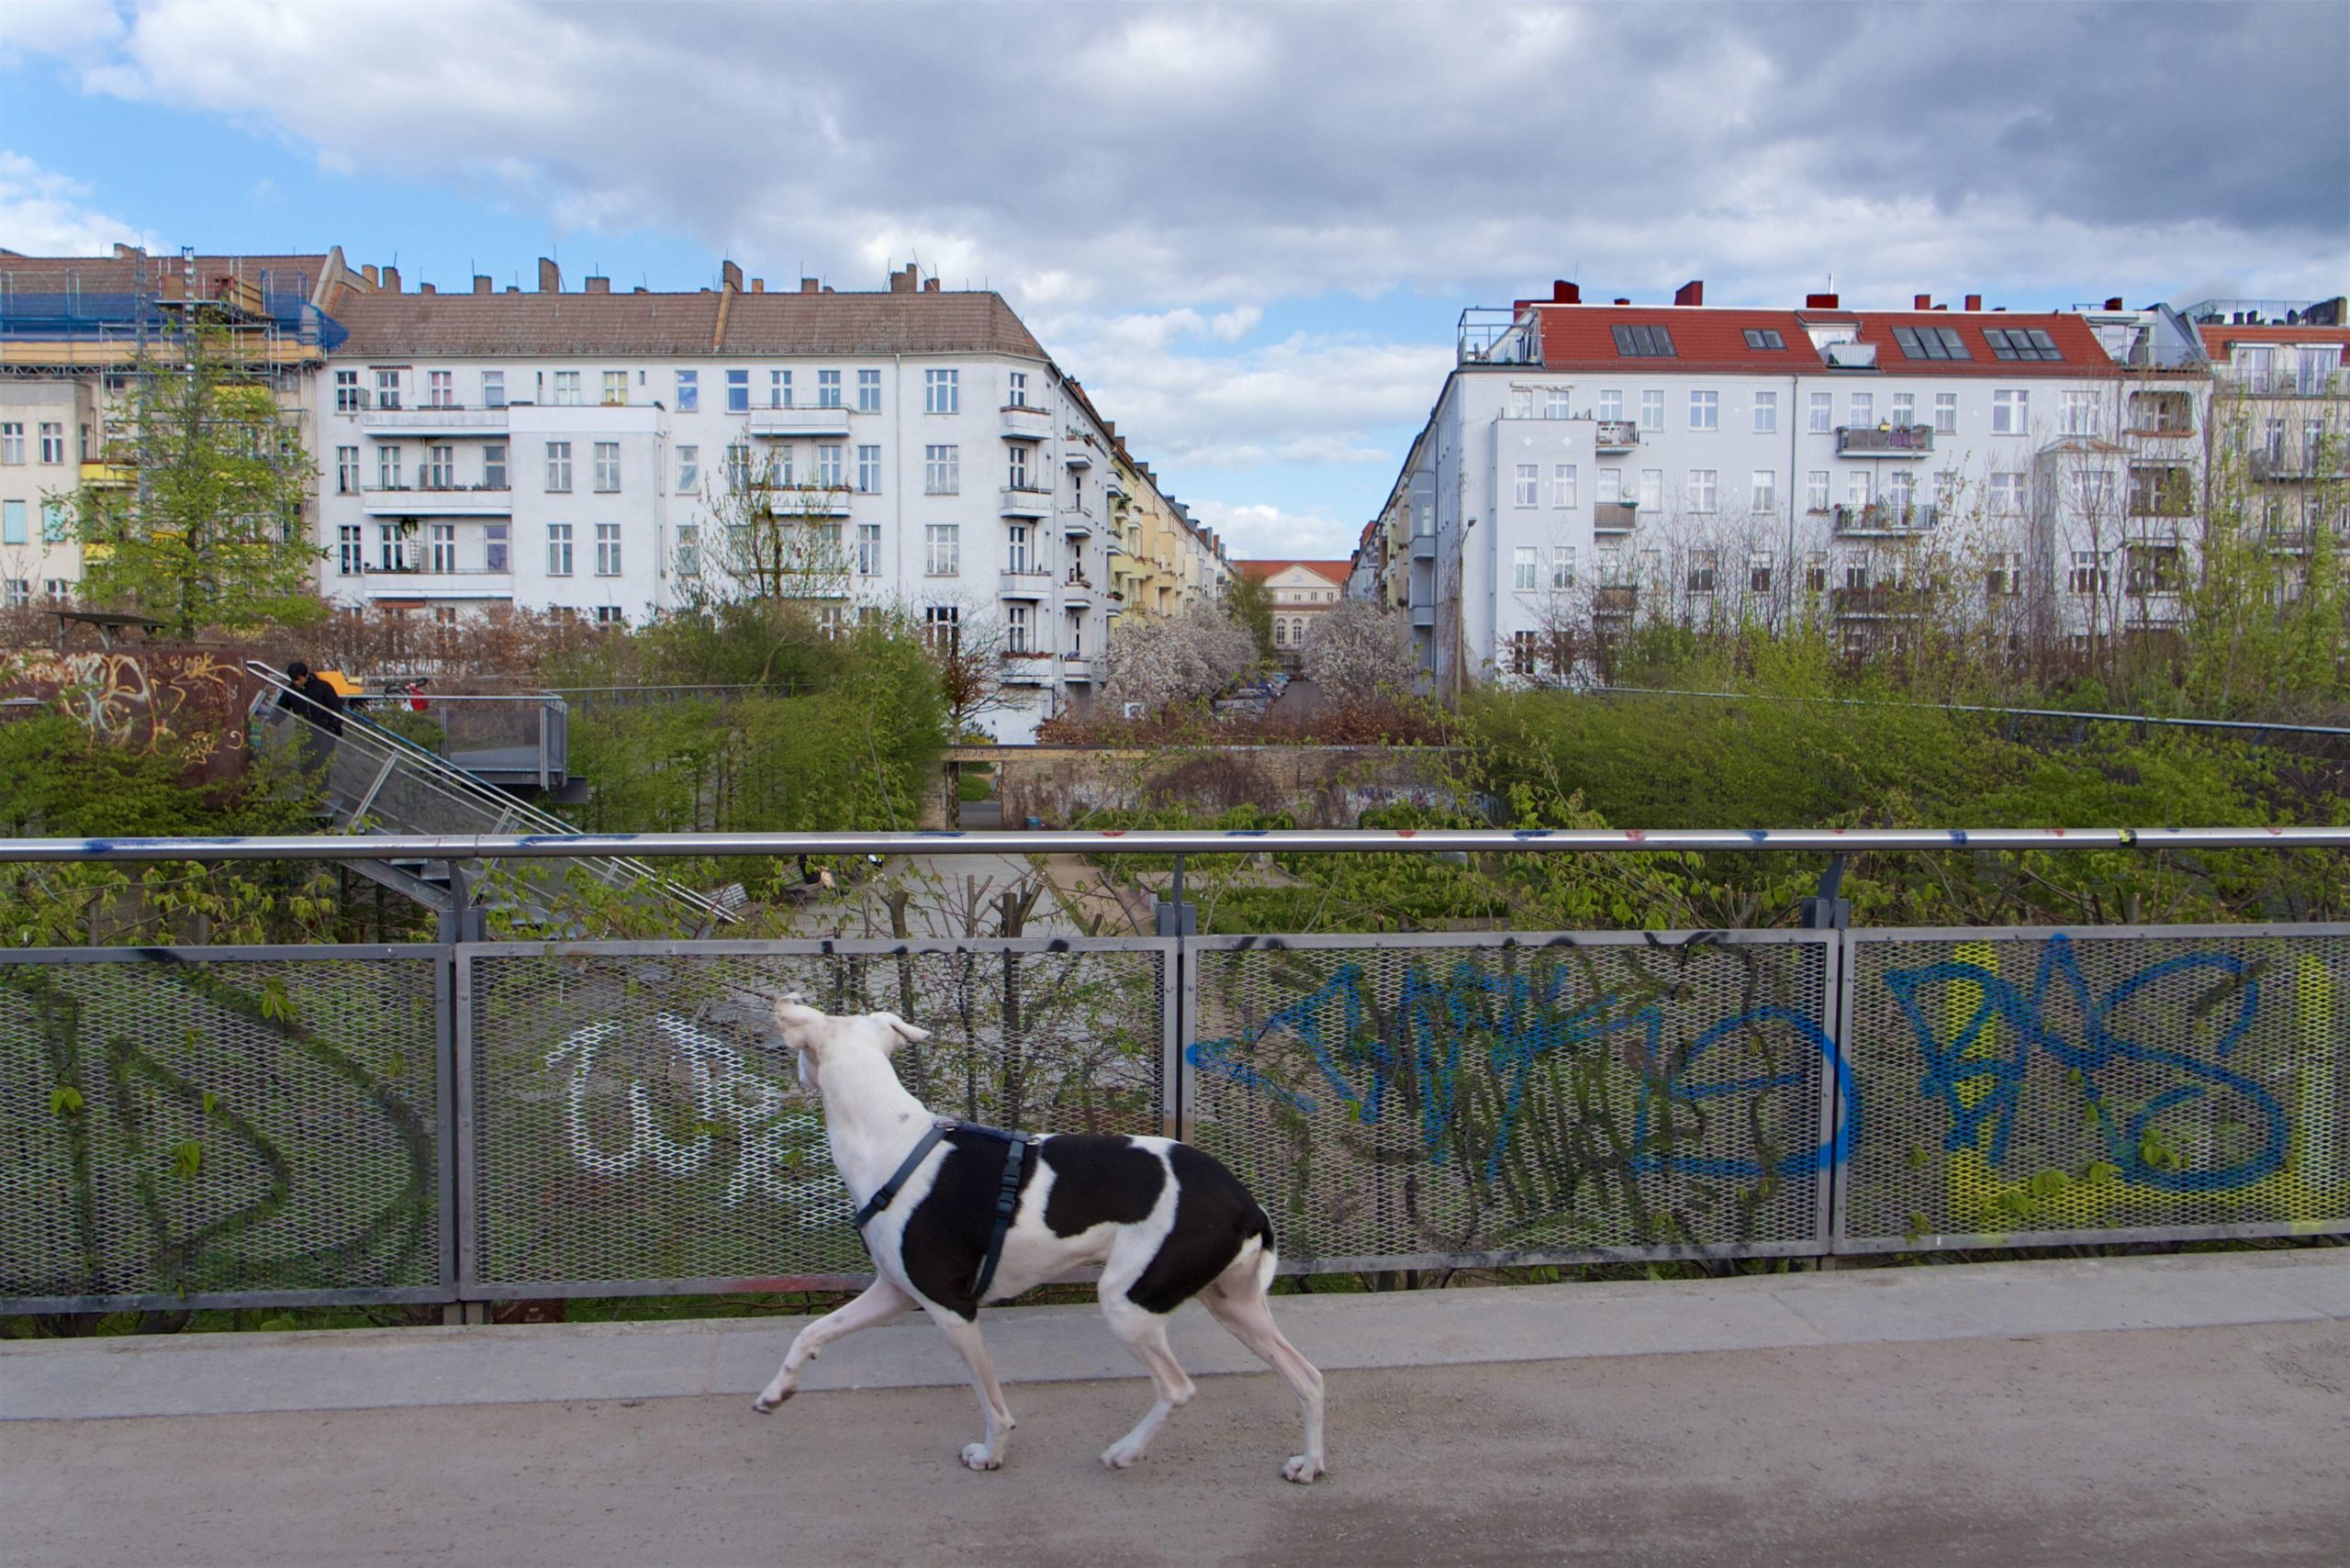 Vorsicht, freilaufender Hund in Prenzlauer Berg. Foto: Imago/Rolf Zöllner